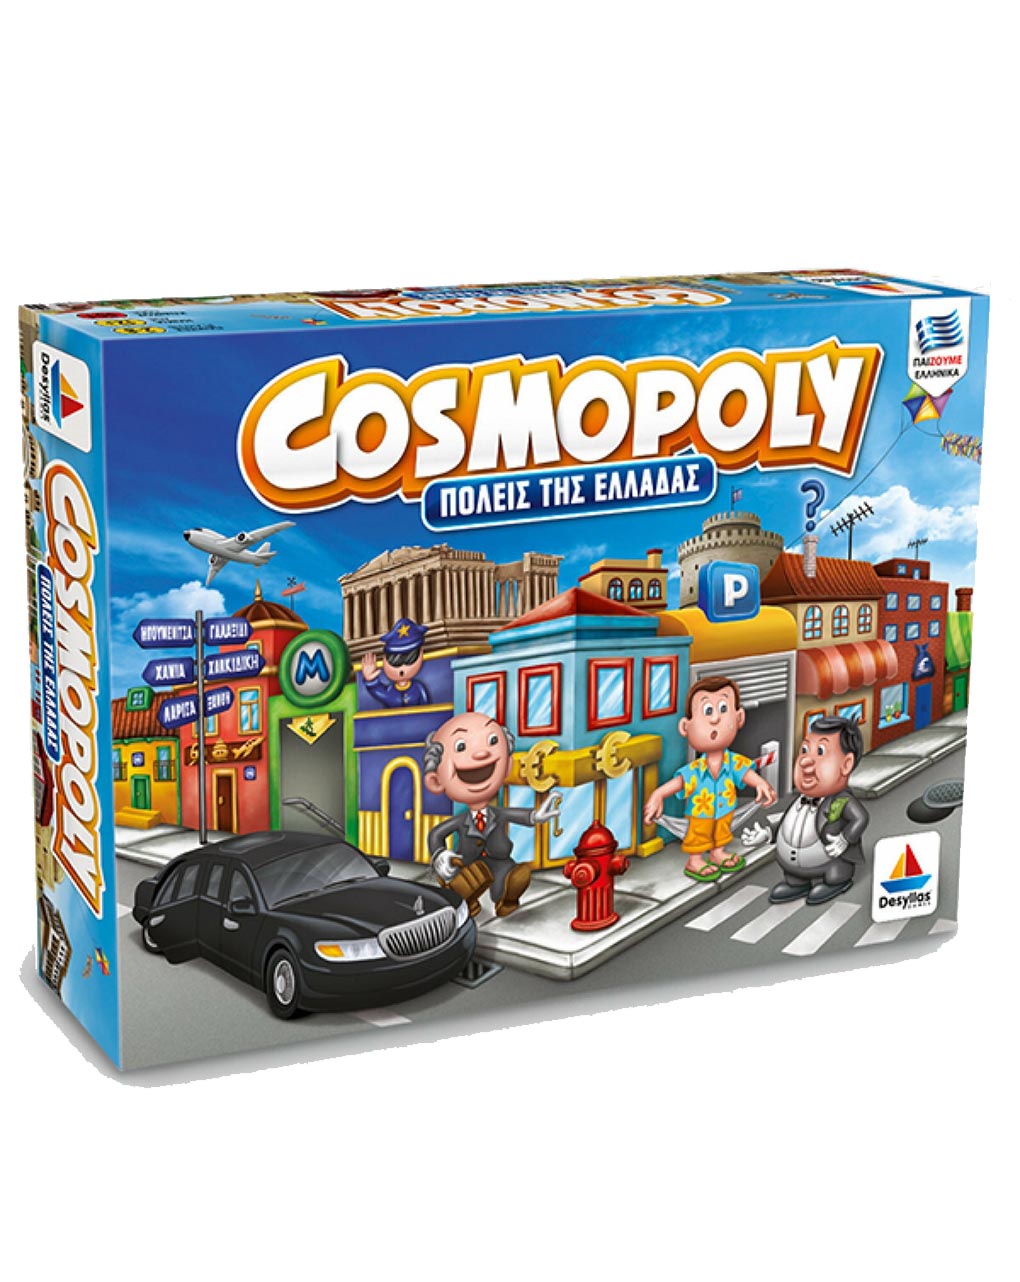 Desyllas games δεσύλλας επιτραπέζια οικογενειακά cosmopoly (πόλεις της ελλάδας) 100556